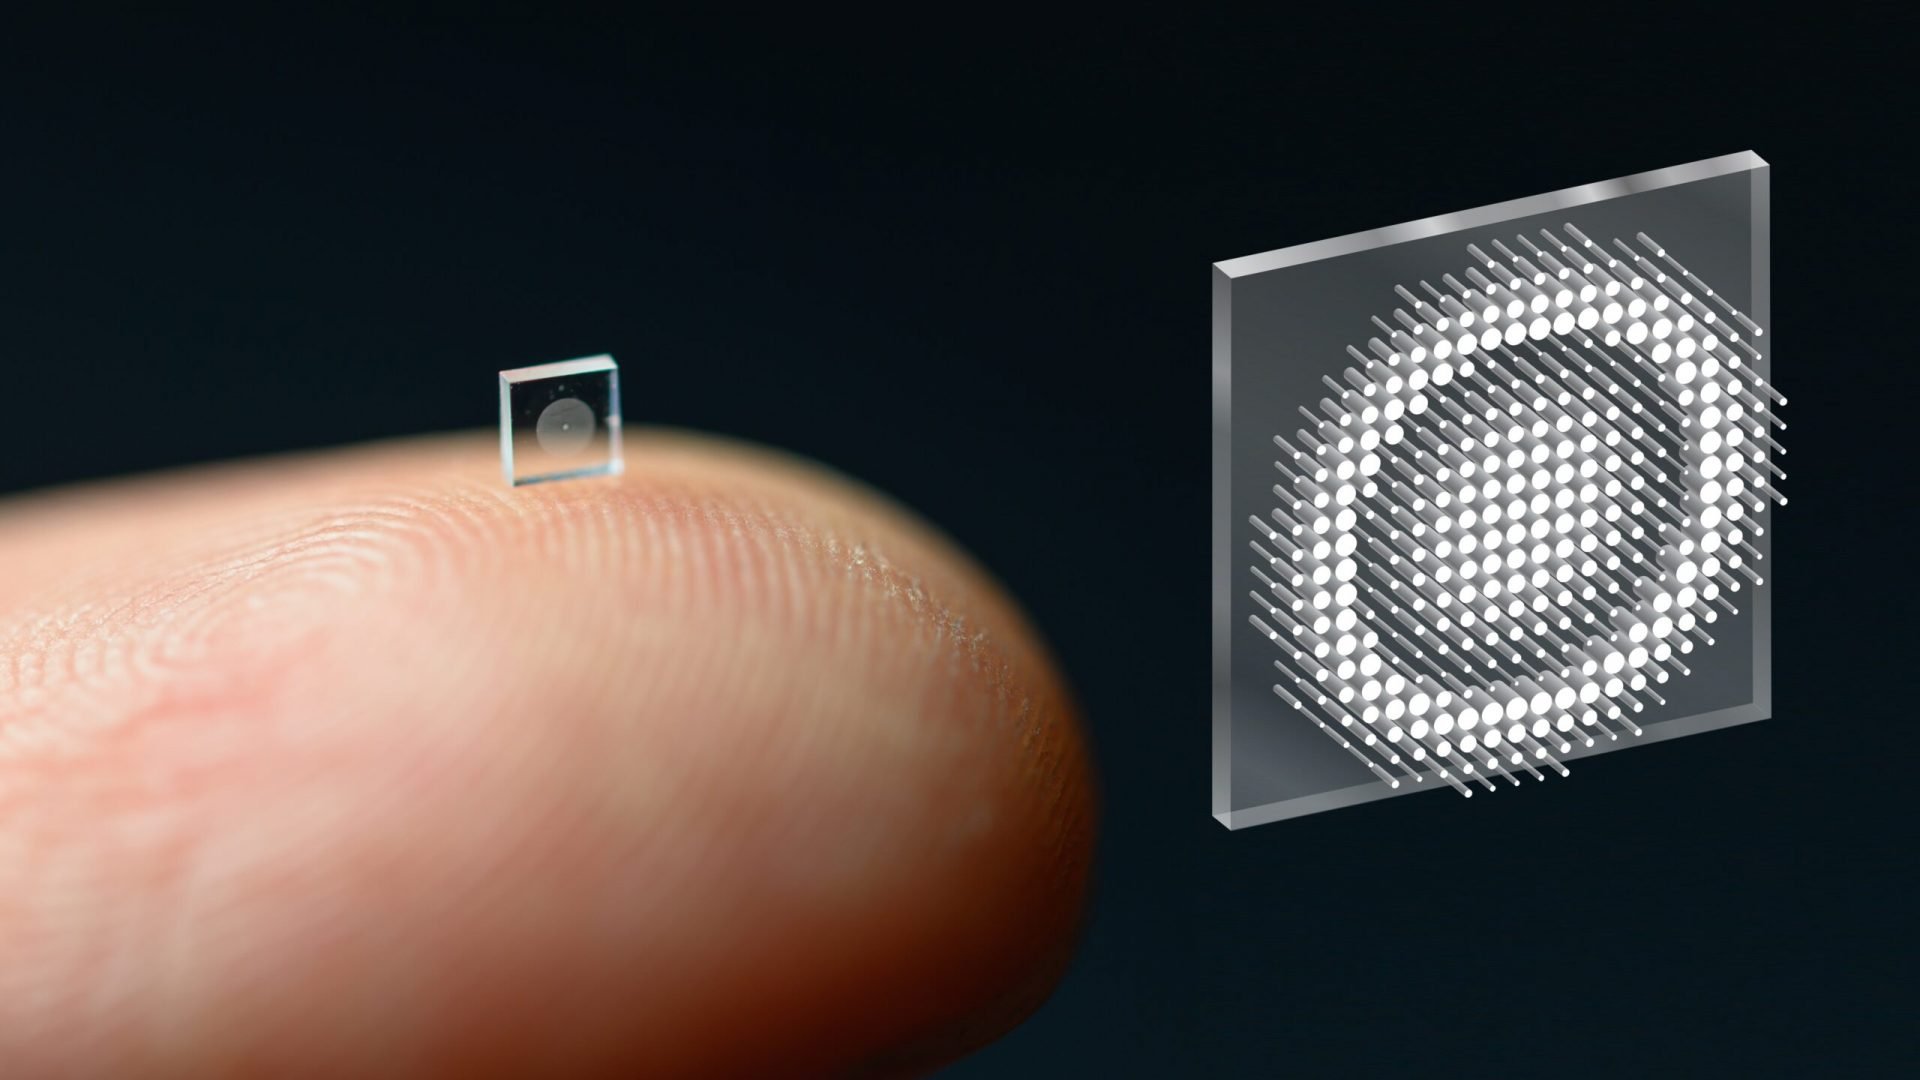 Imagem mostra uma nanocâmera em cima da ponta de um dedo, demonstrando o tamanho minúsculo do objeto